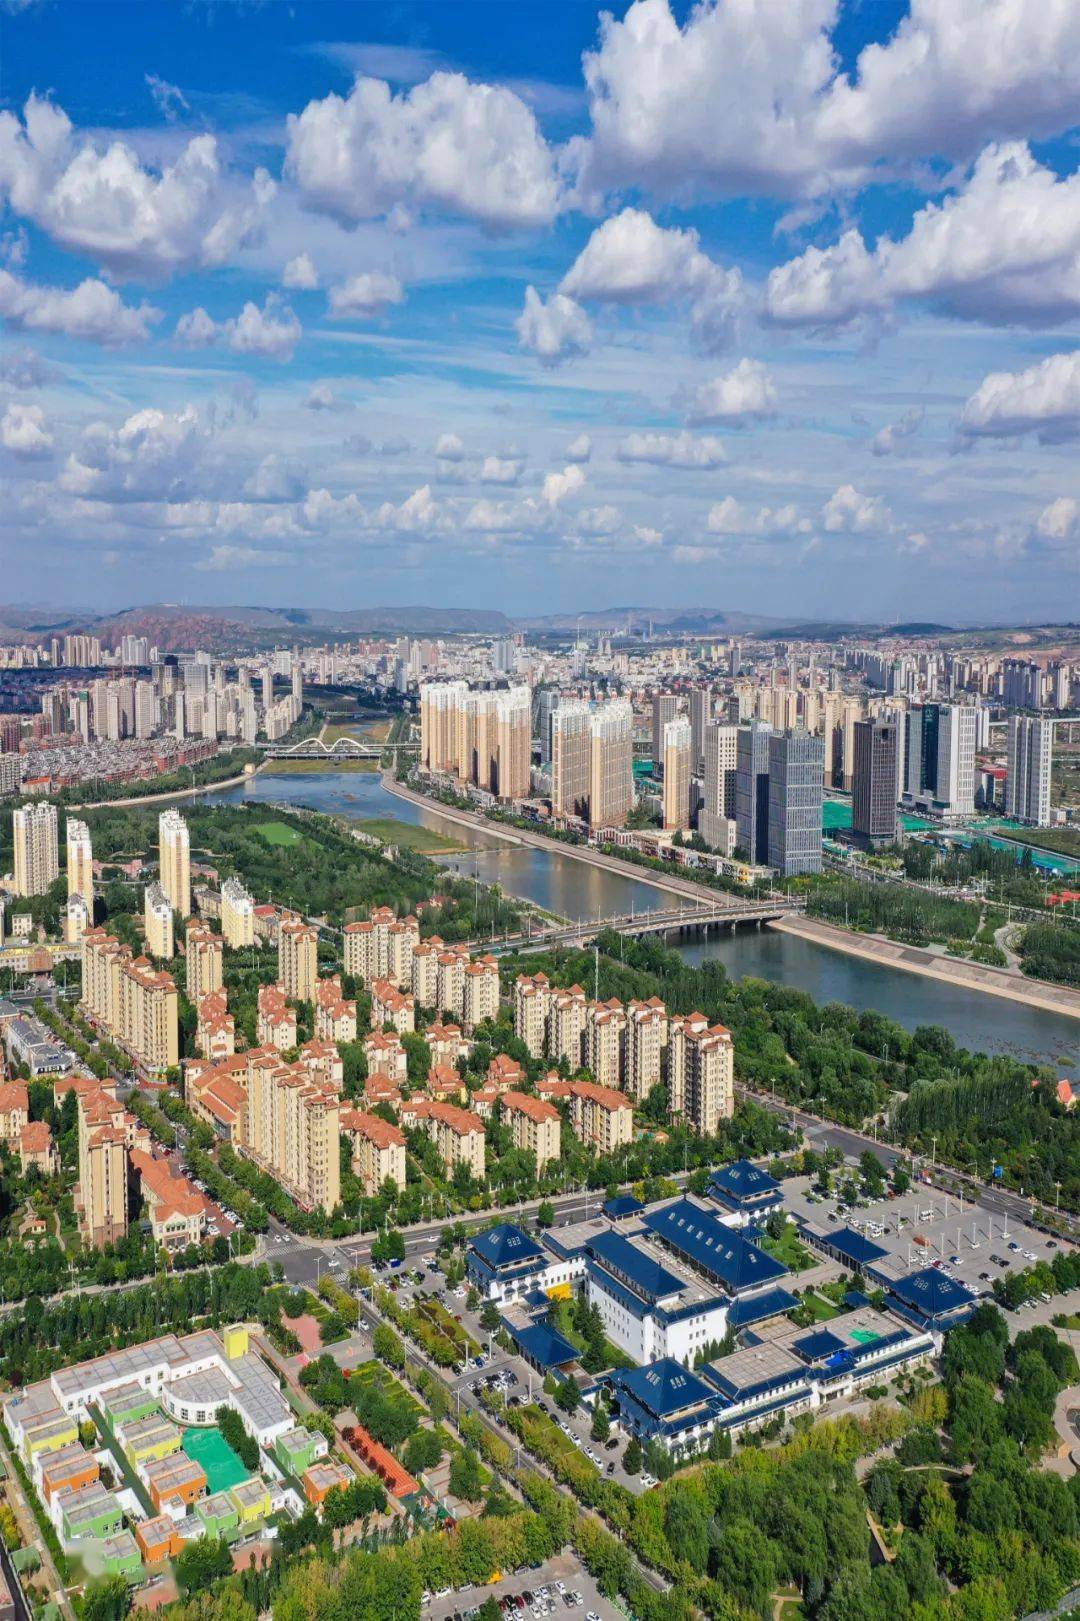 赤峰城区发展提质加速,迈入崭新阶段